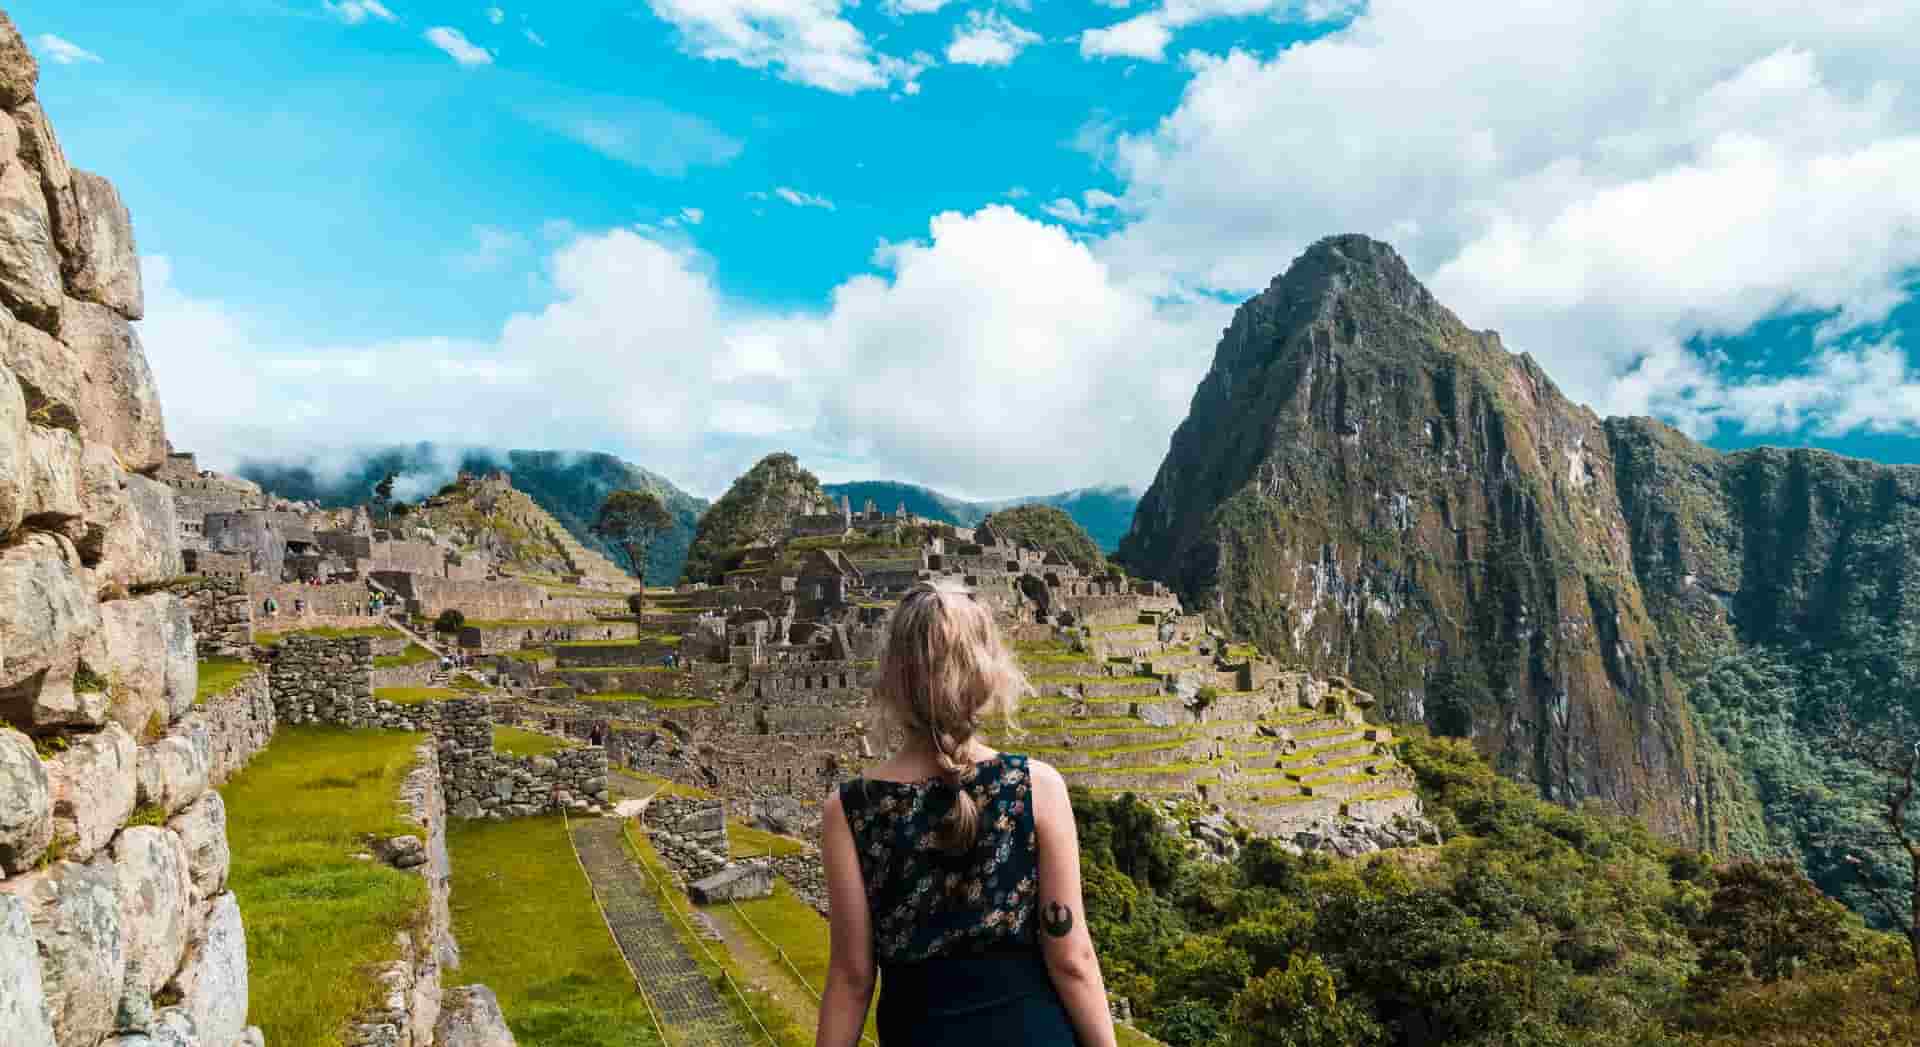 Day 4: Wiñay Wayna to Machu Picchu